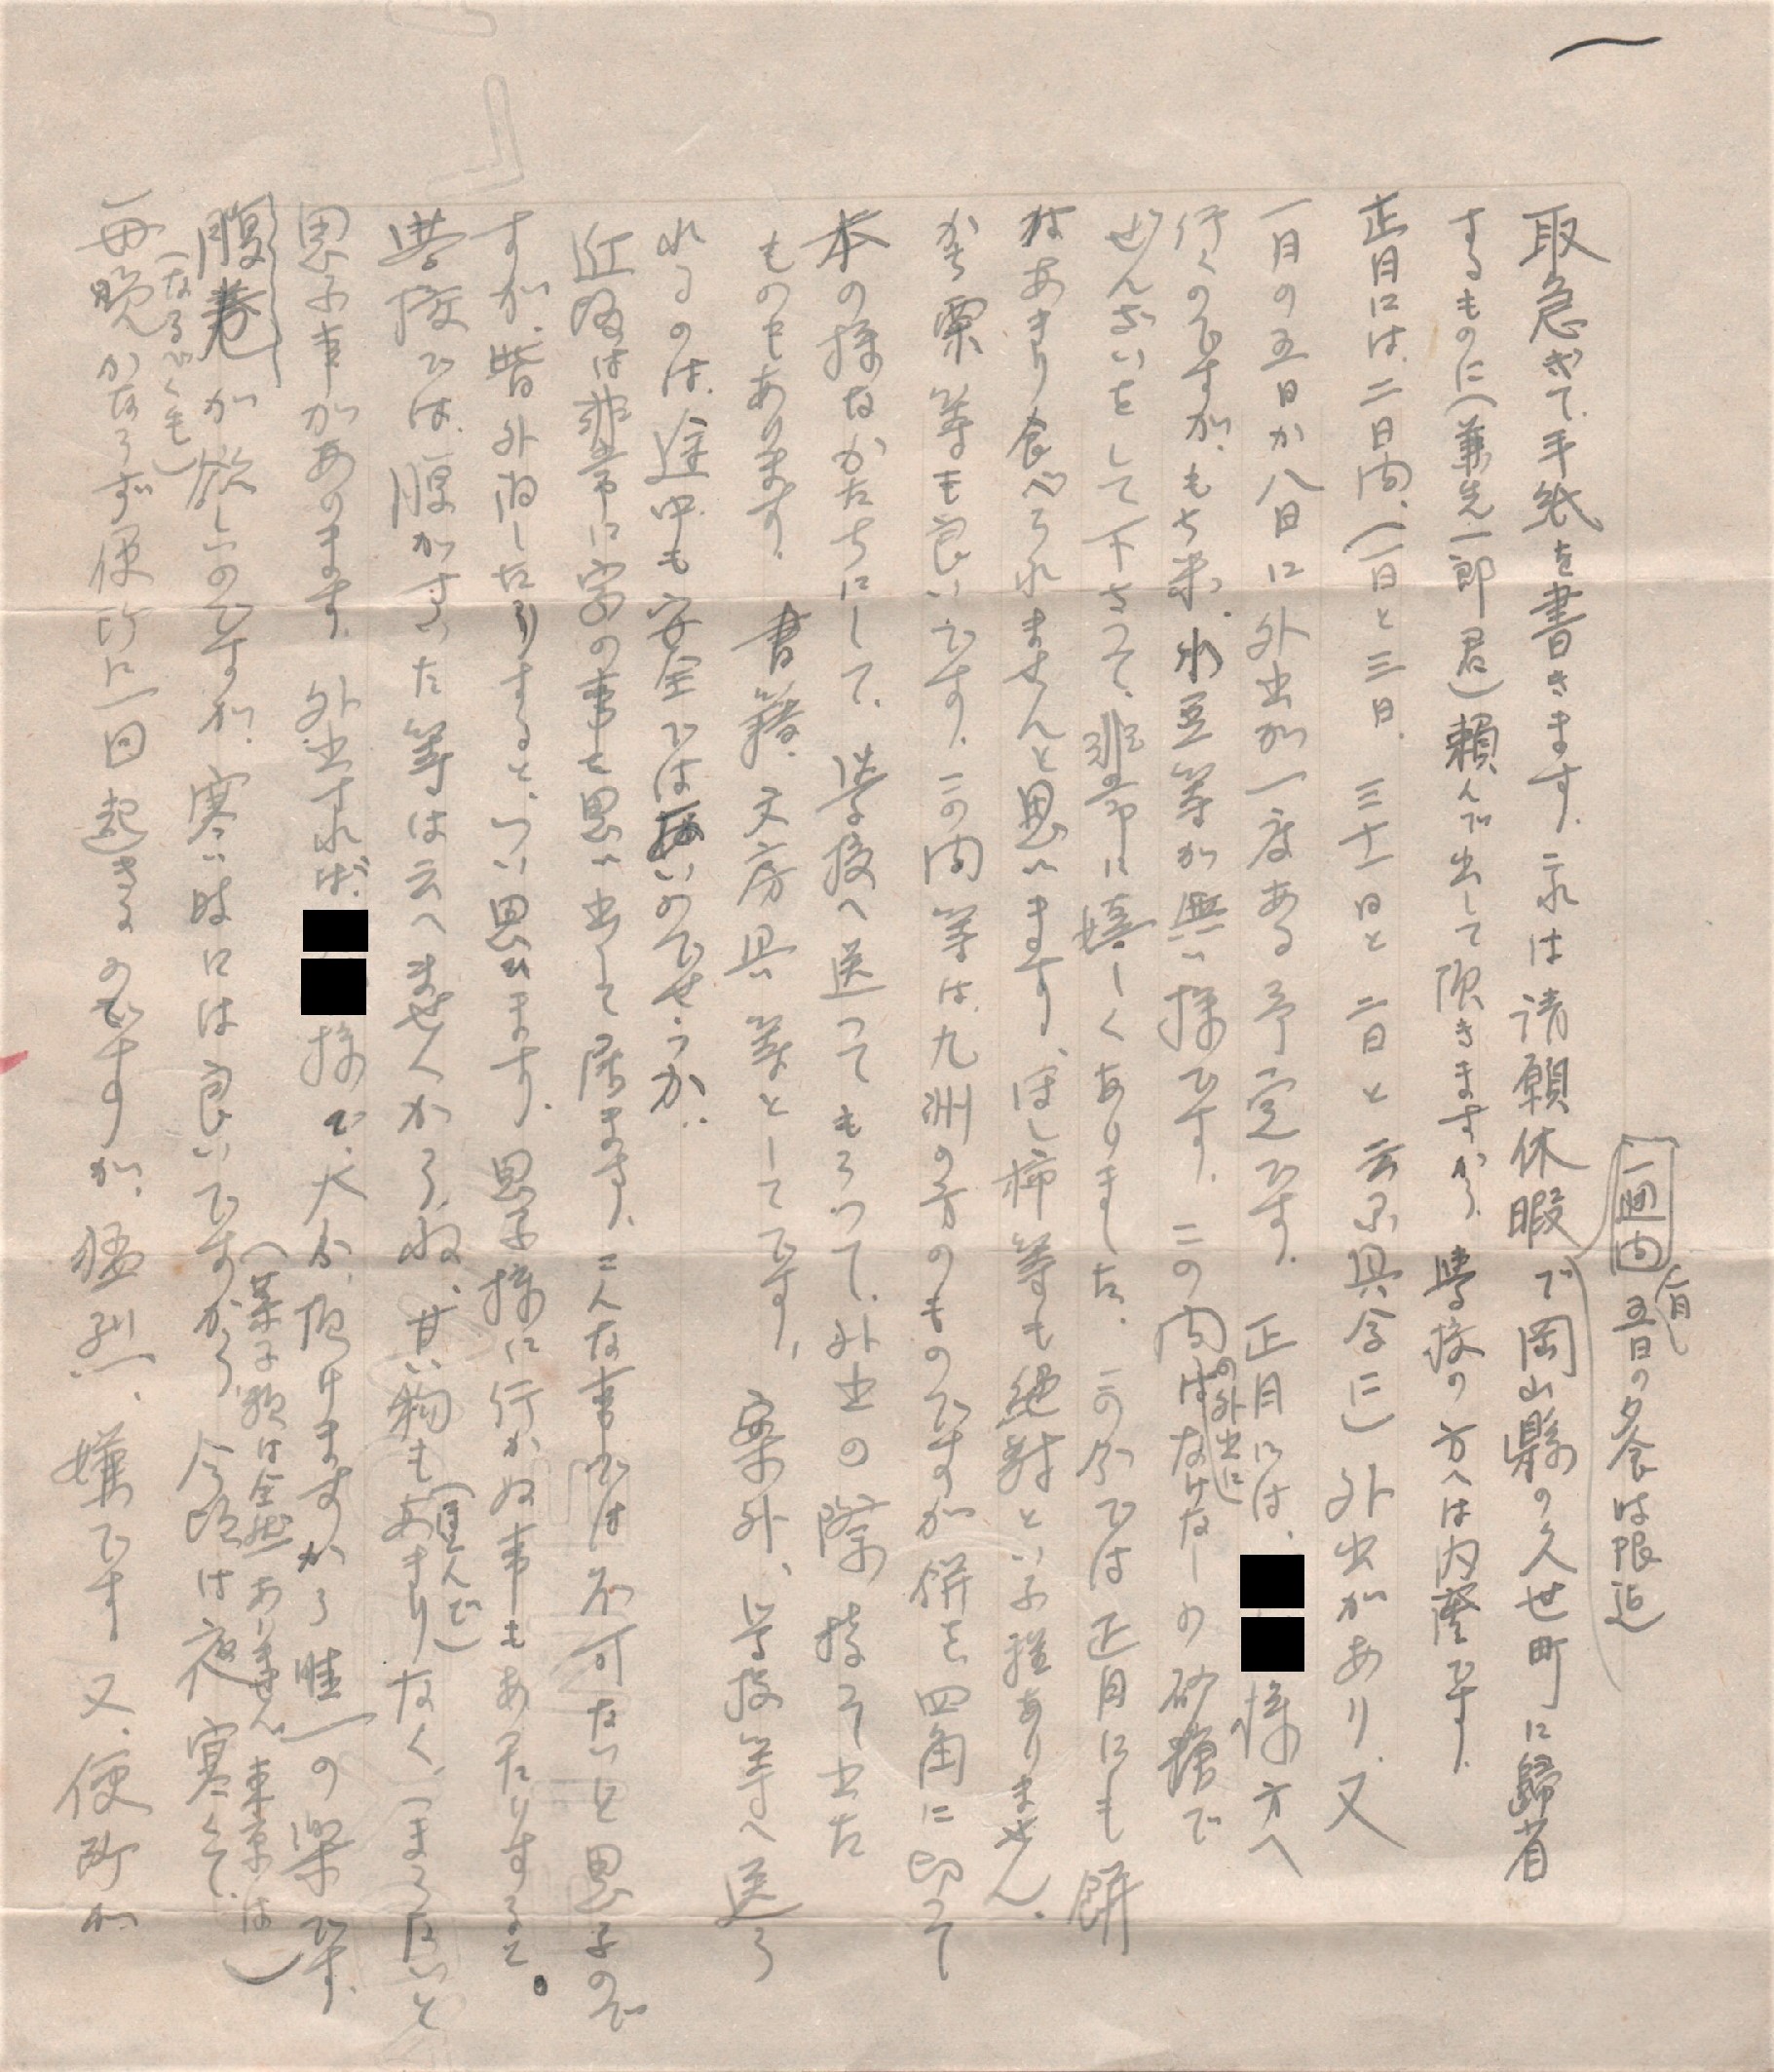 昭和１９年１２月２８日 三郎から母千代子への手紙 母へは本音で甘えられる 1944に遭遇した家族